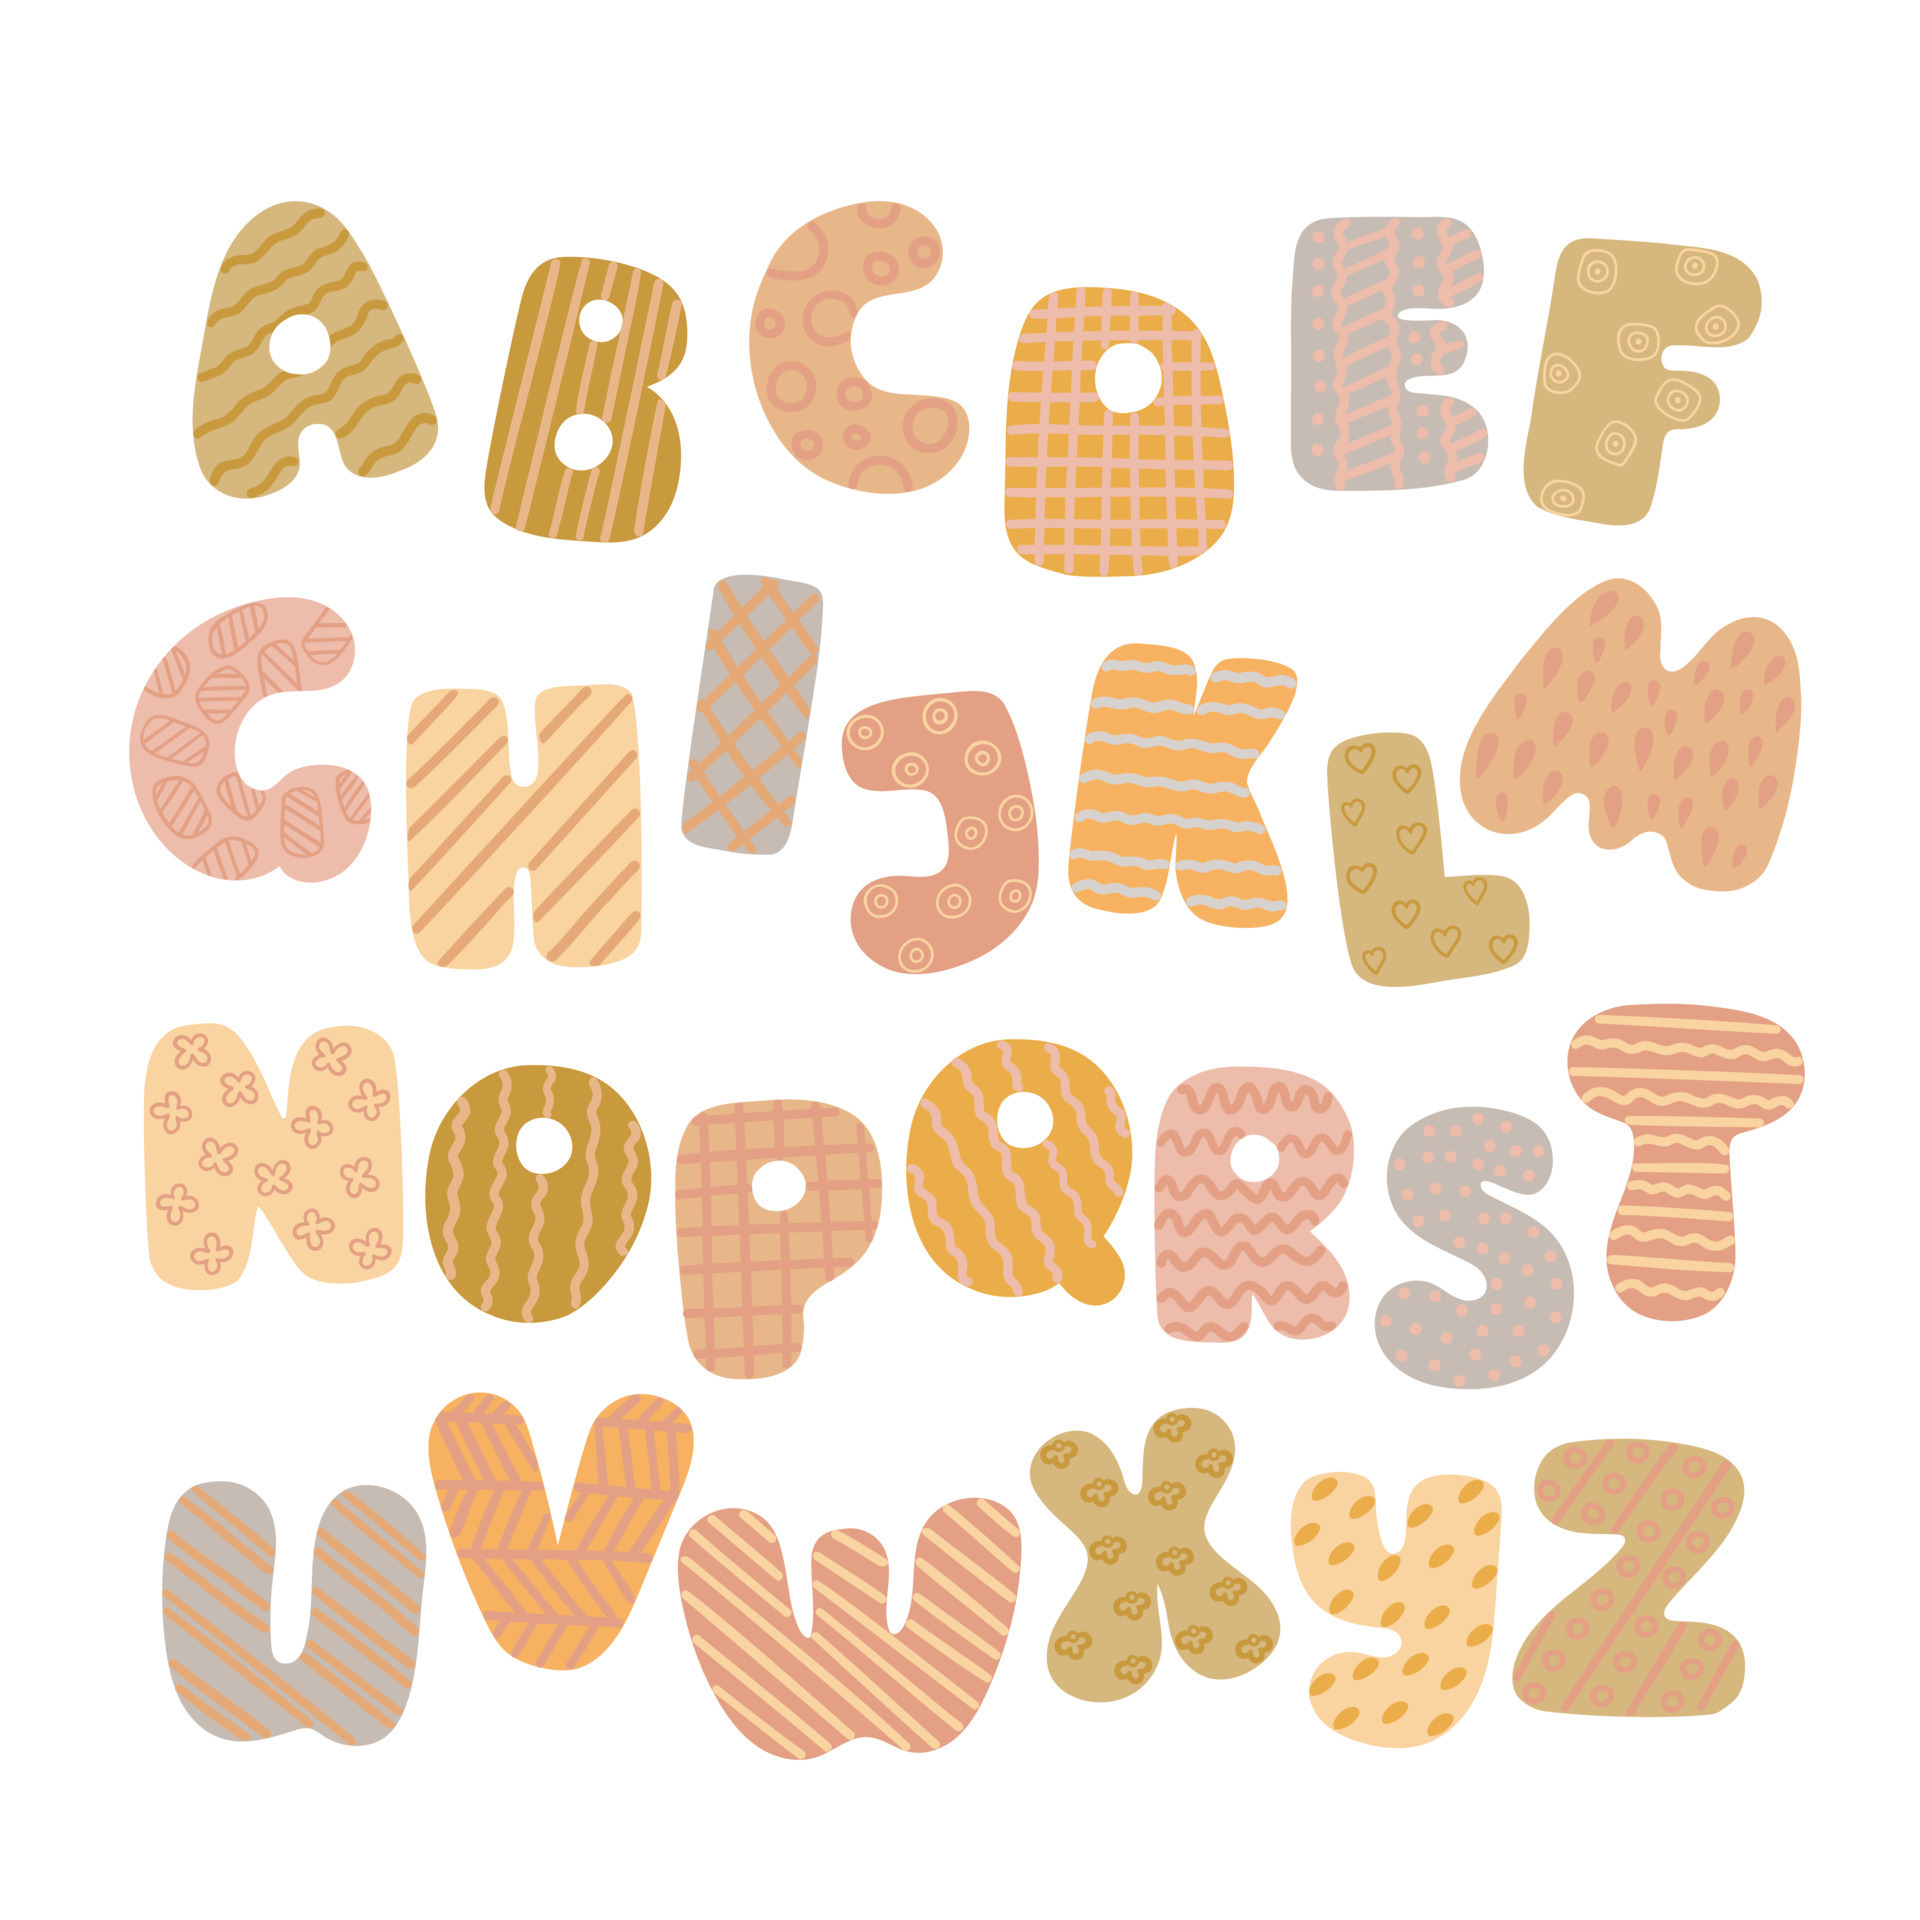 Decorative Letters: Z | ClipArt ETC